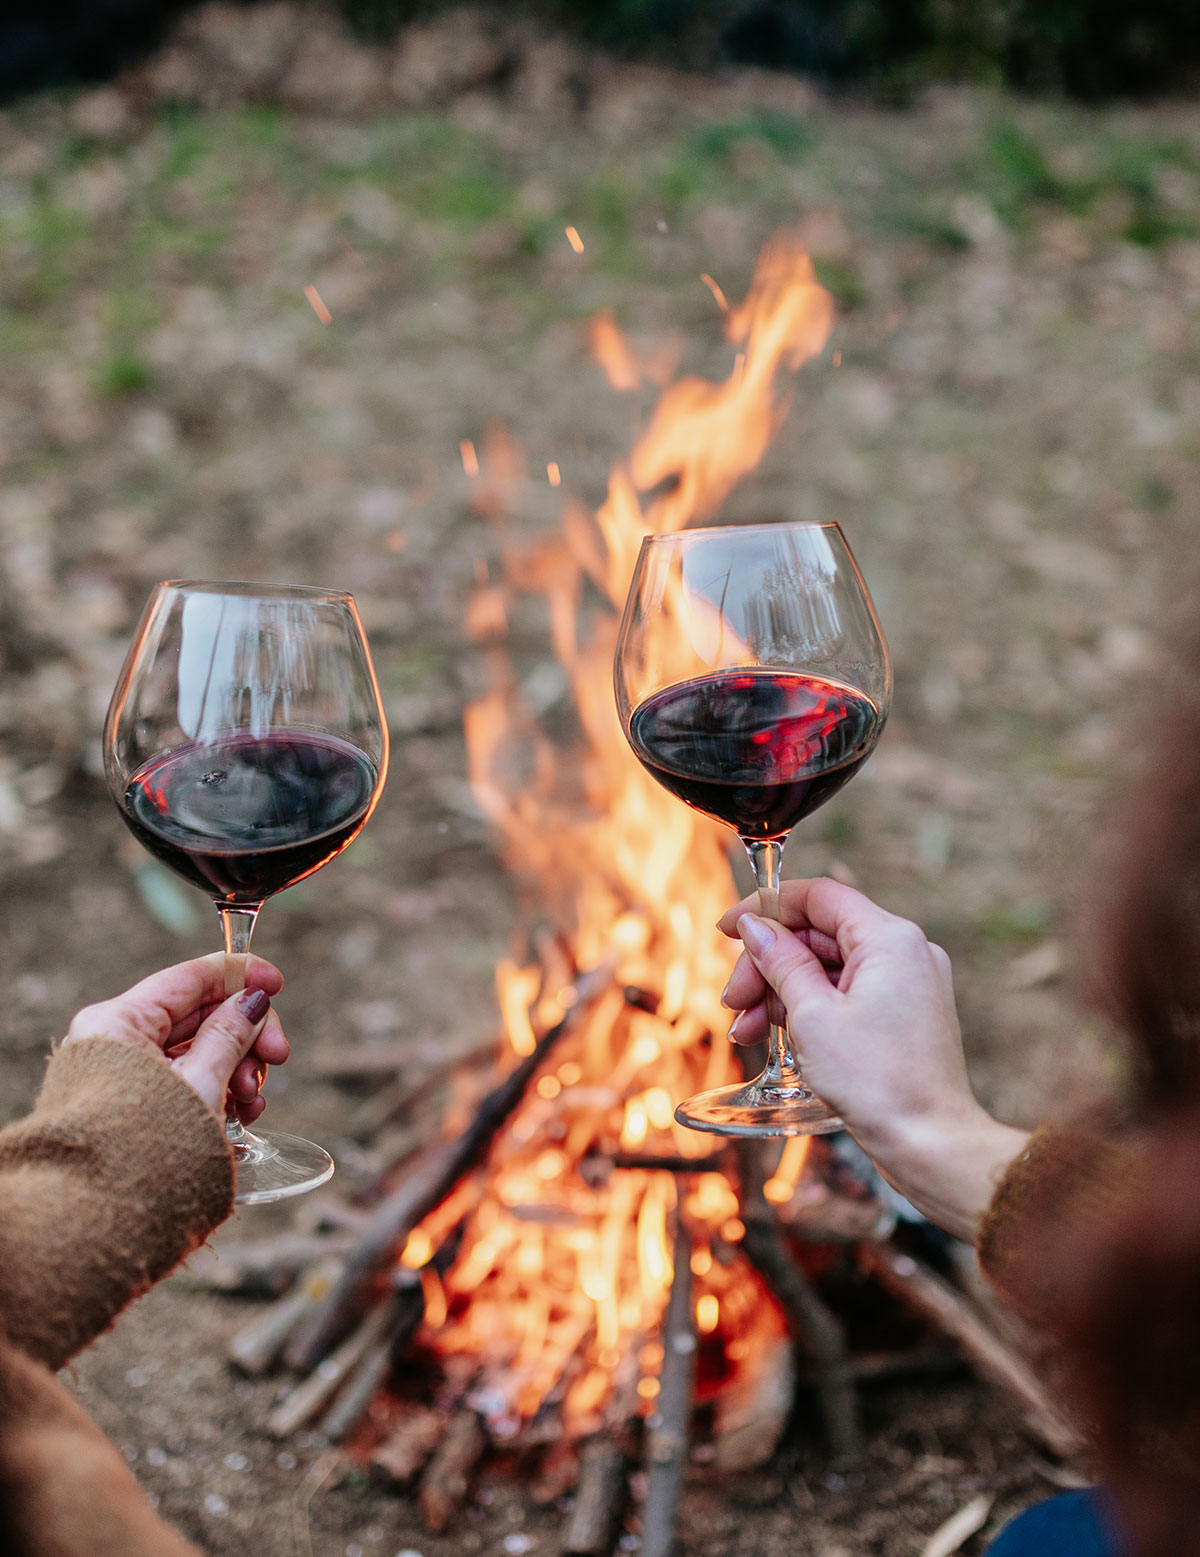 Campfire and Wine at Lake Winnipeg